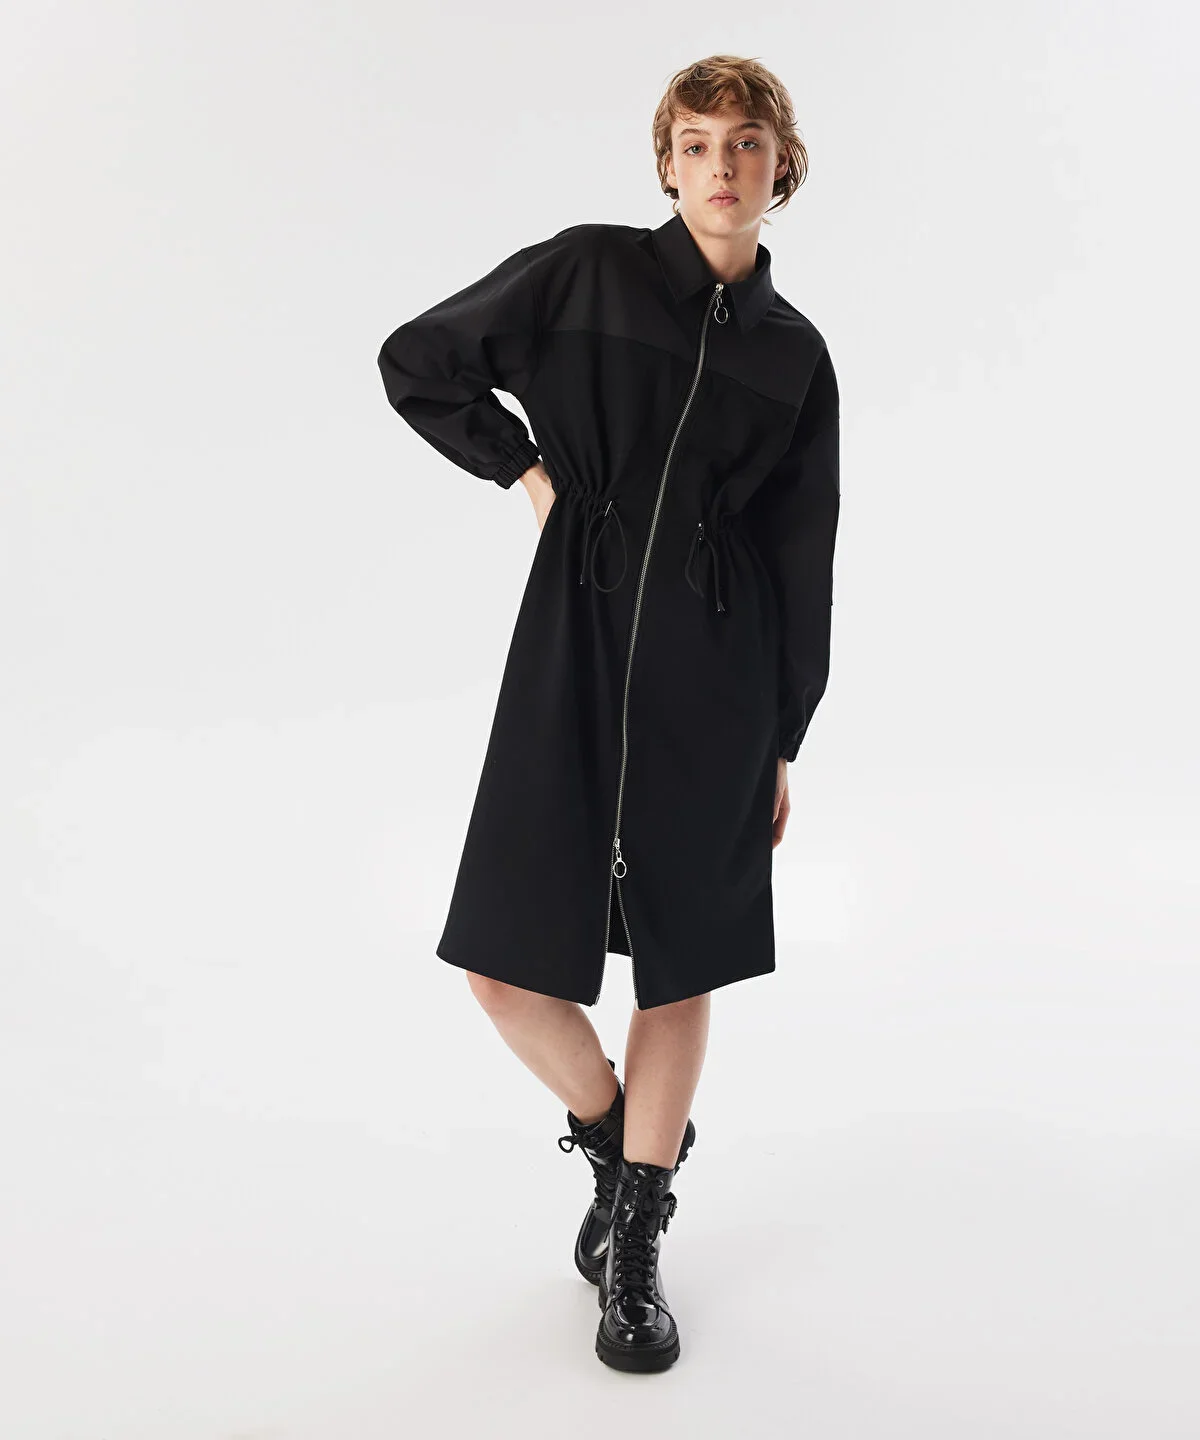 Kadın Kumaş Mix Midi Elbise - Siyah - 3